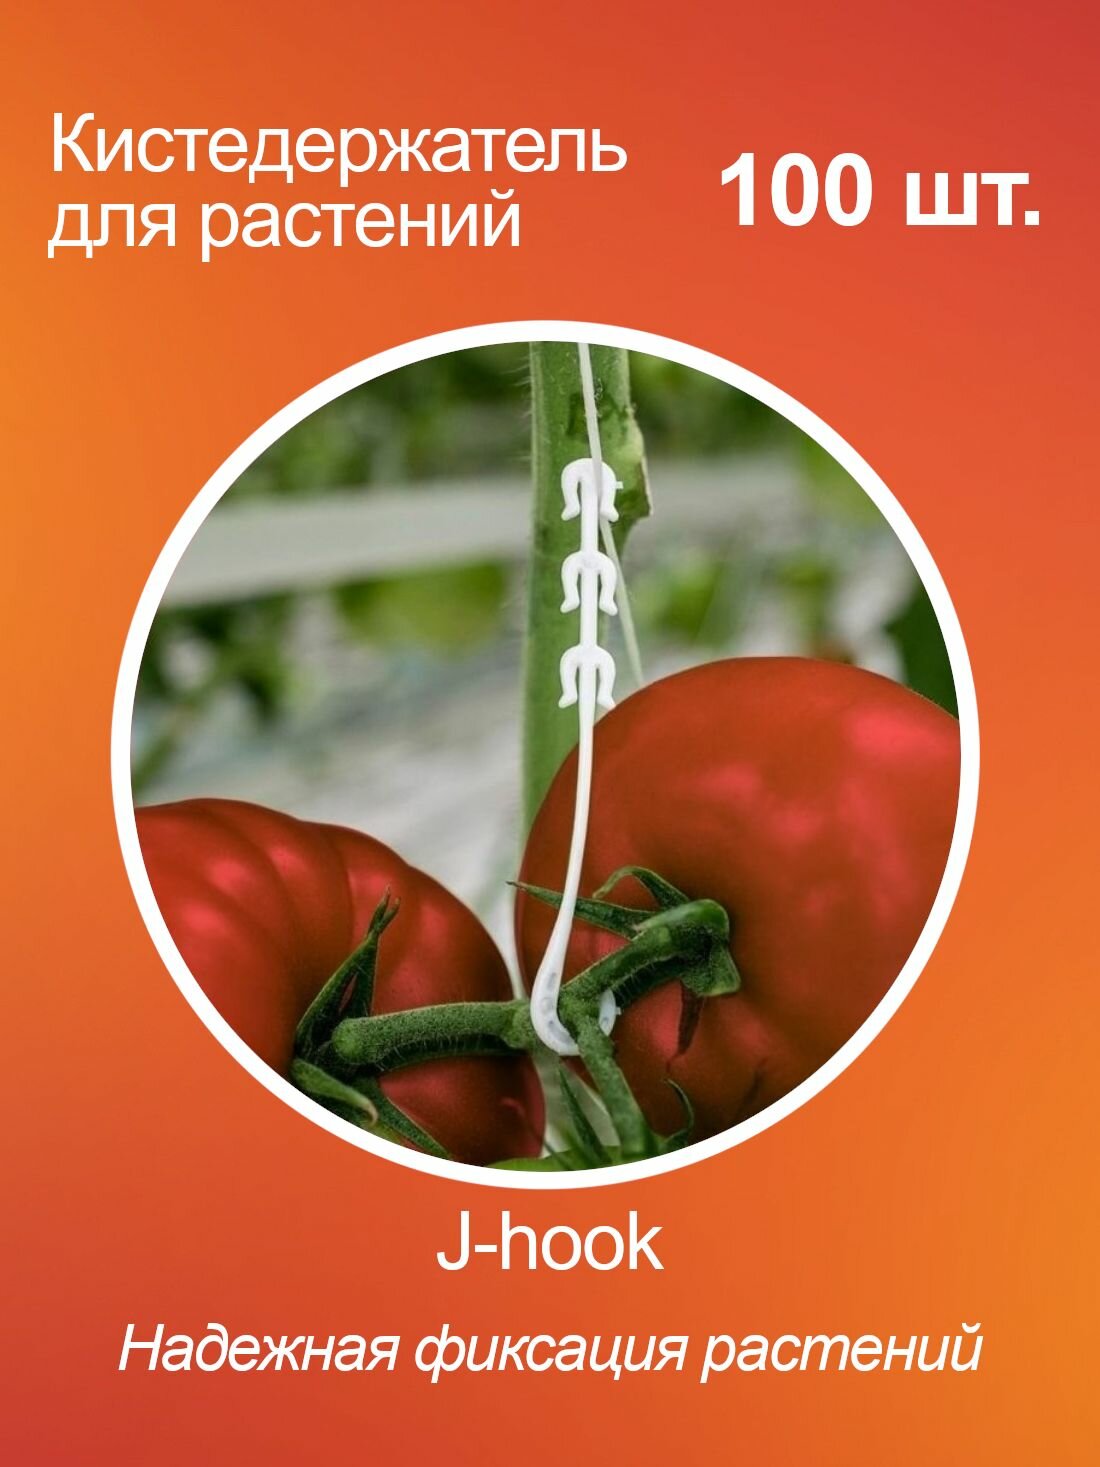 Кистедержатель для томатов помидор и растений J-hook пластик 100 шт.